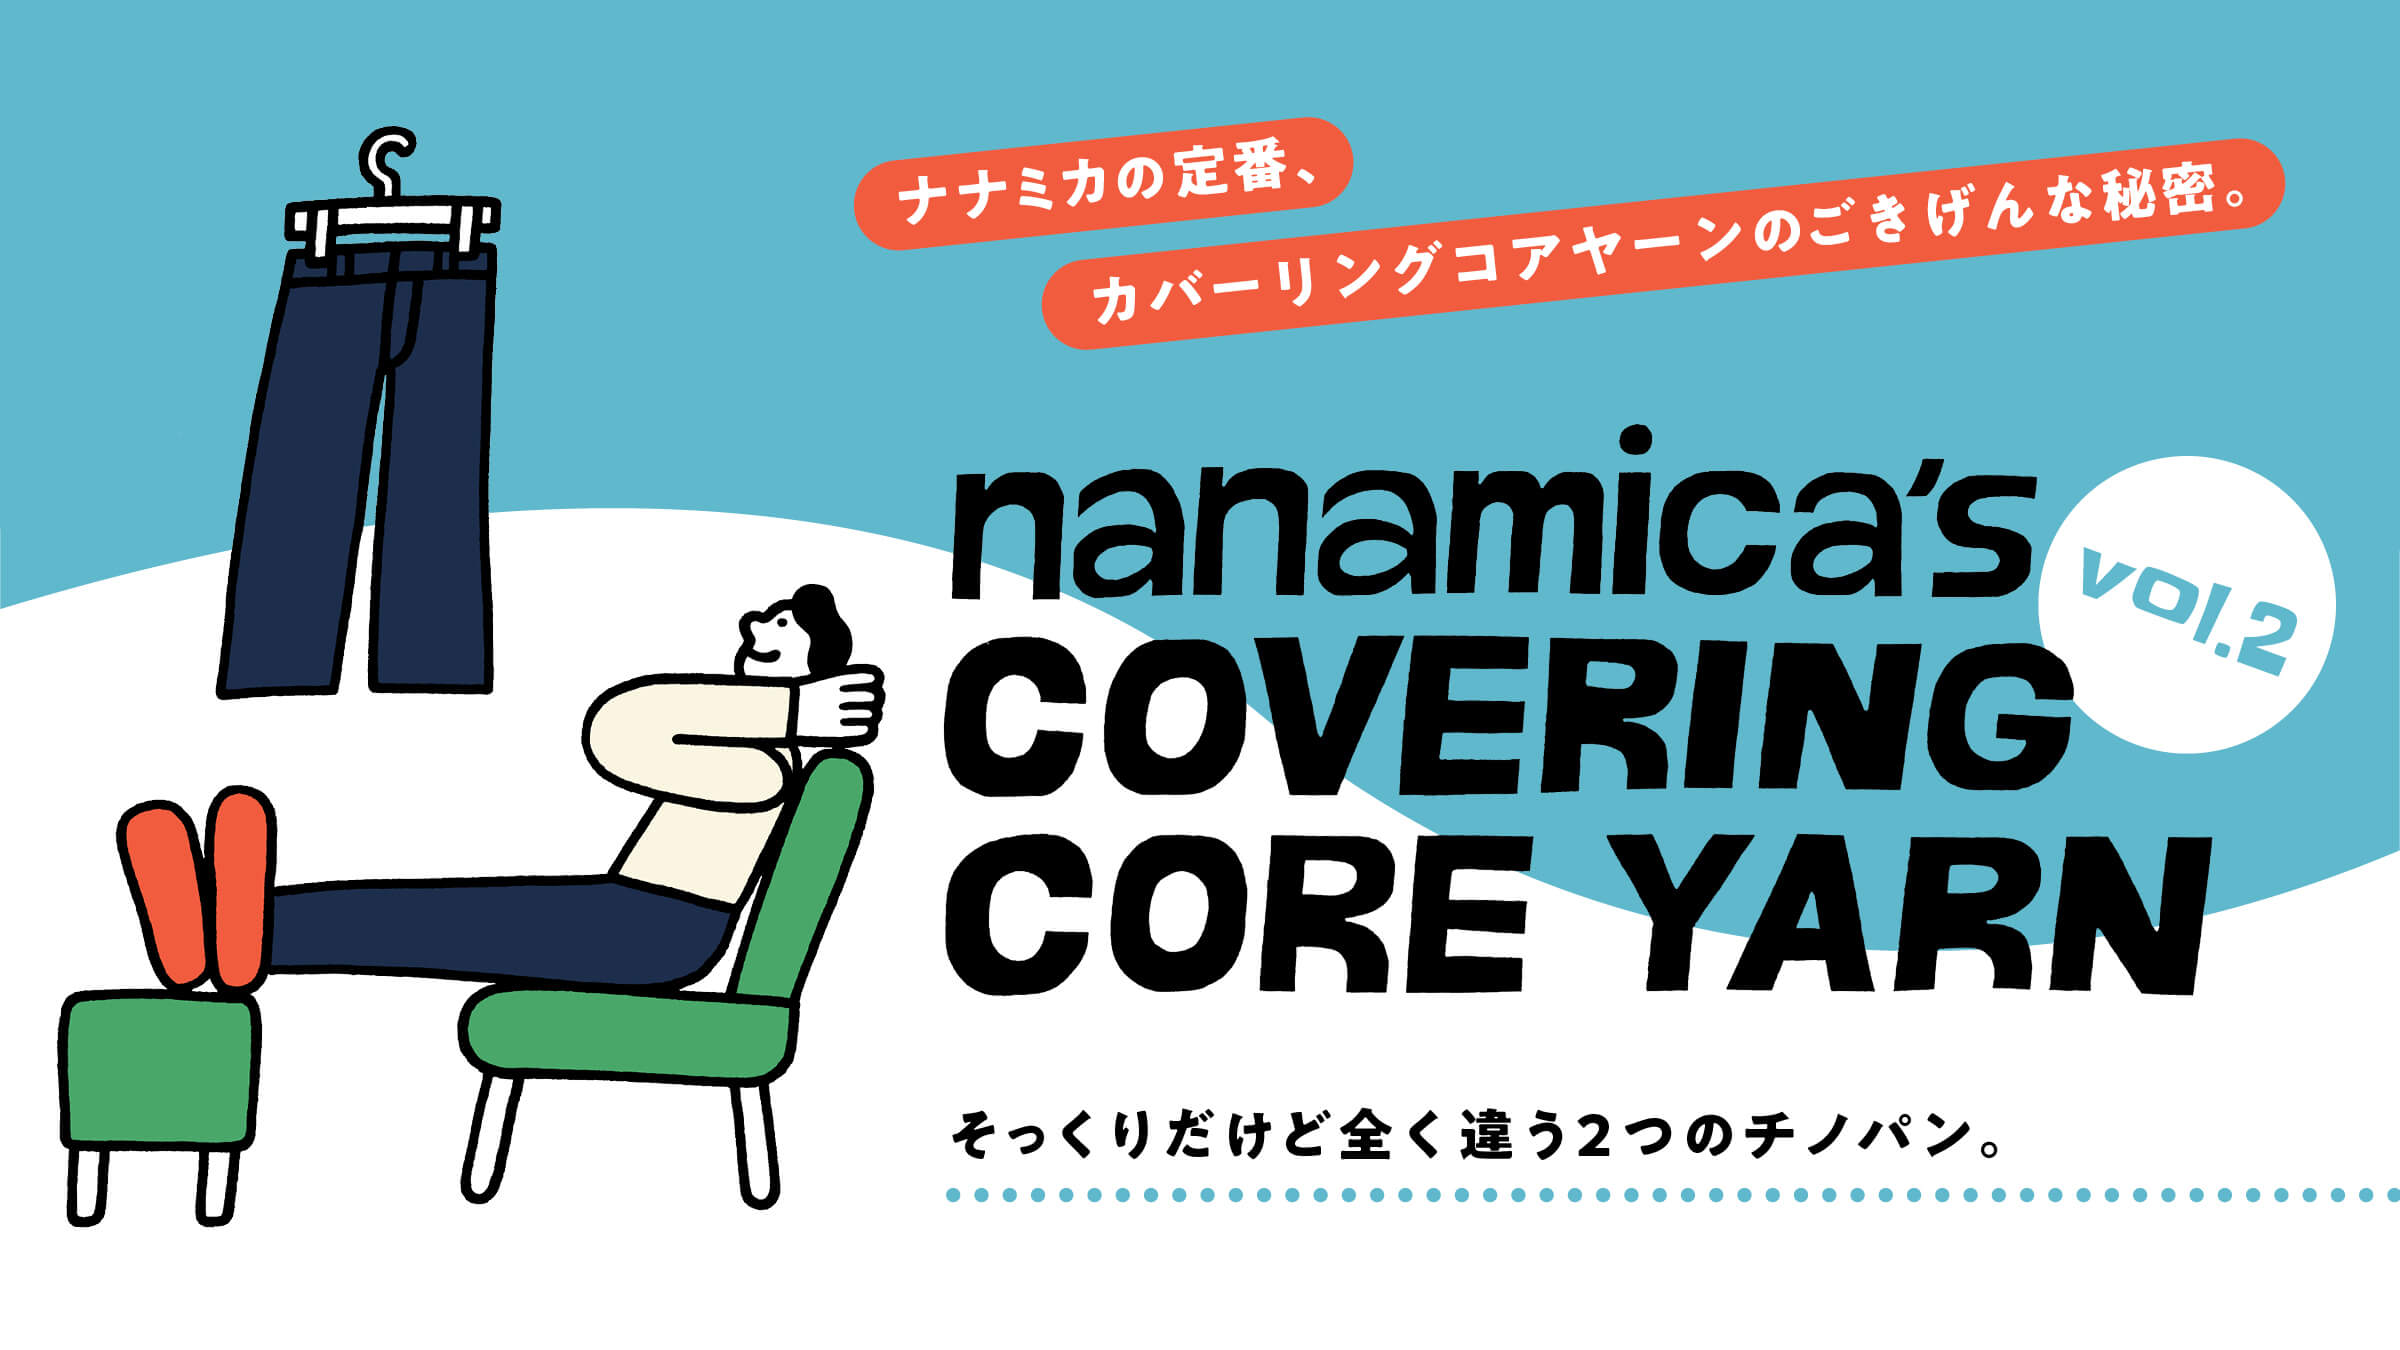 nanamica’s COVERING CORE YARN ナナミカの定番、カバーリングコアヤーンのごきげんな秘密。 vol.2 そっくりだけど全く違う2つのチノパン。